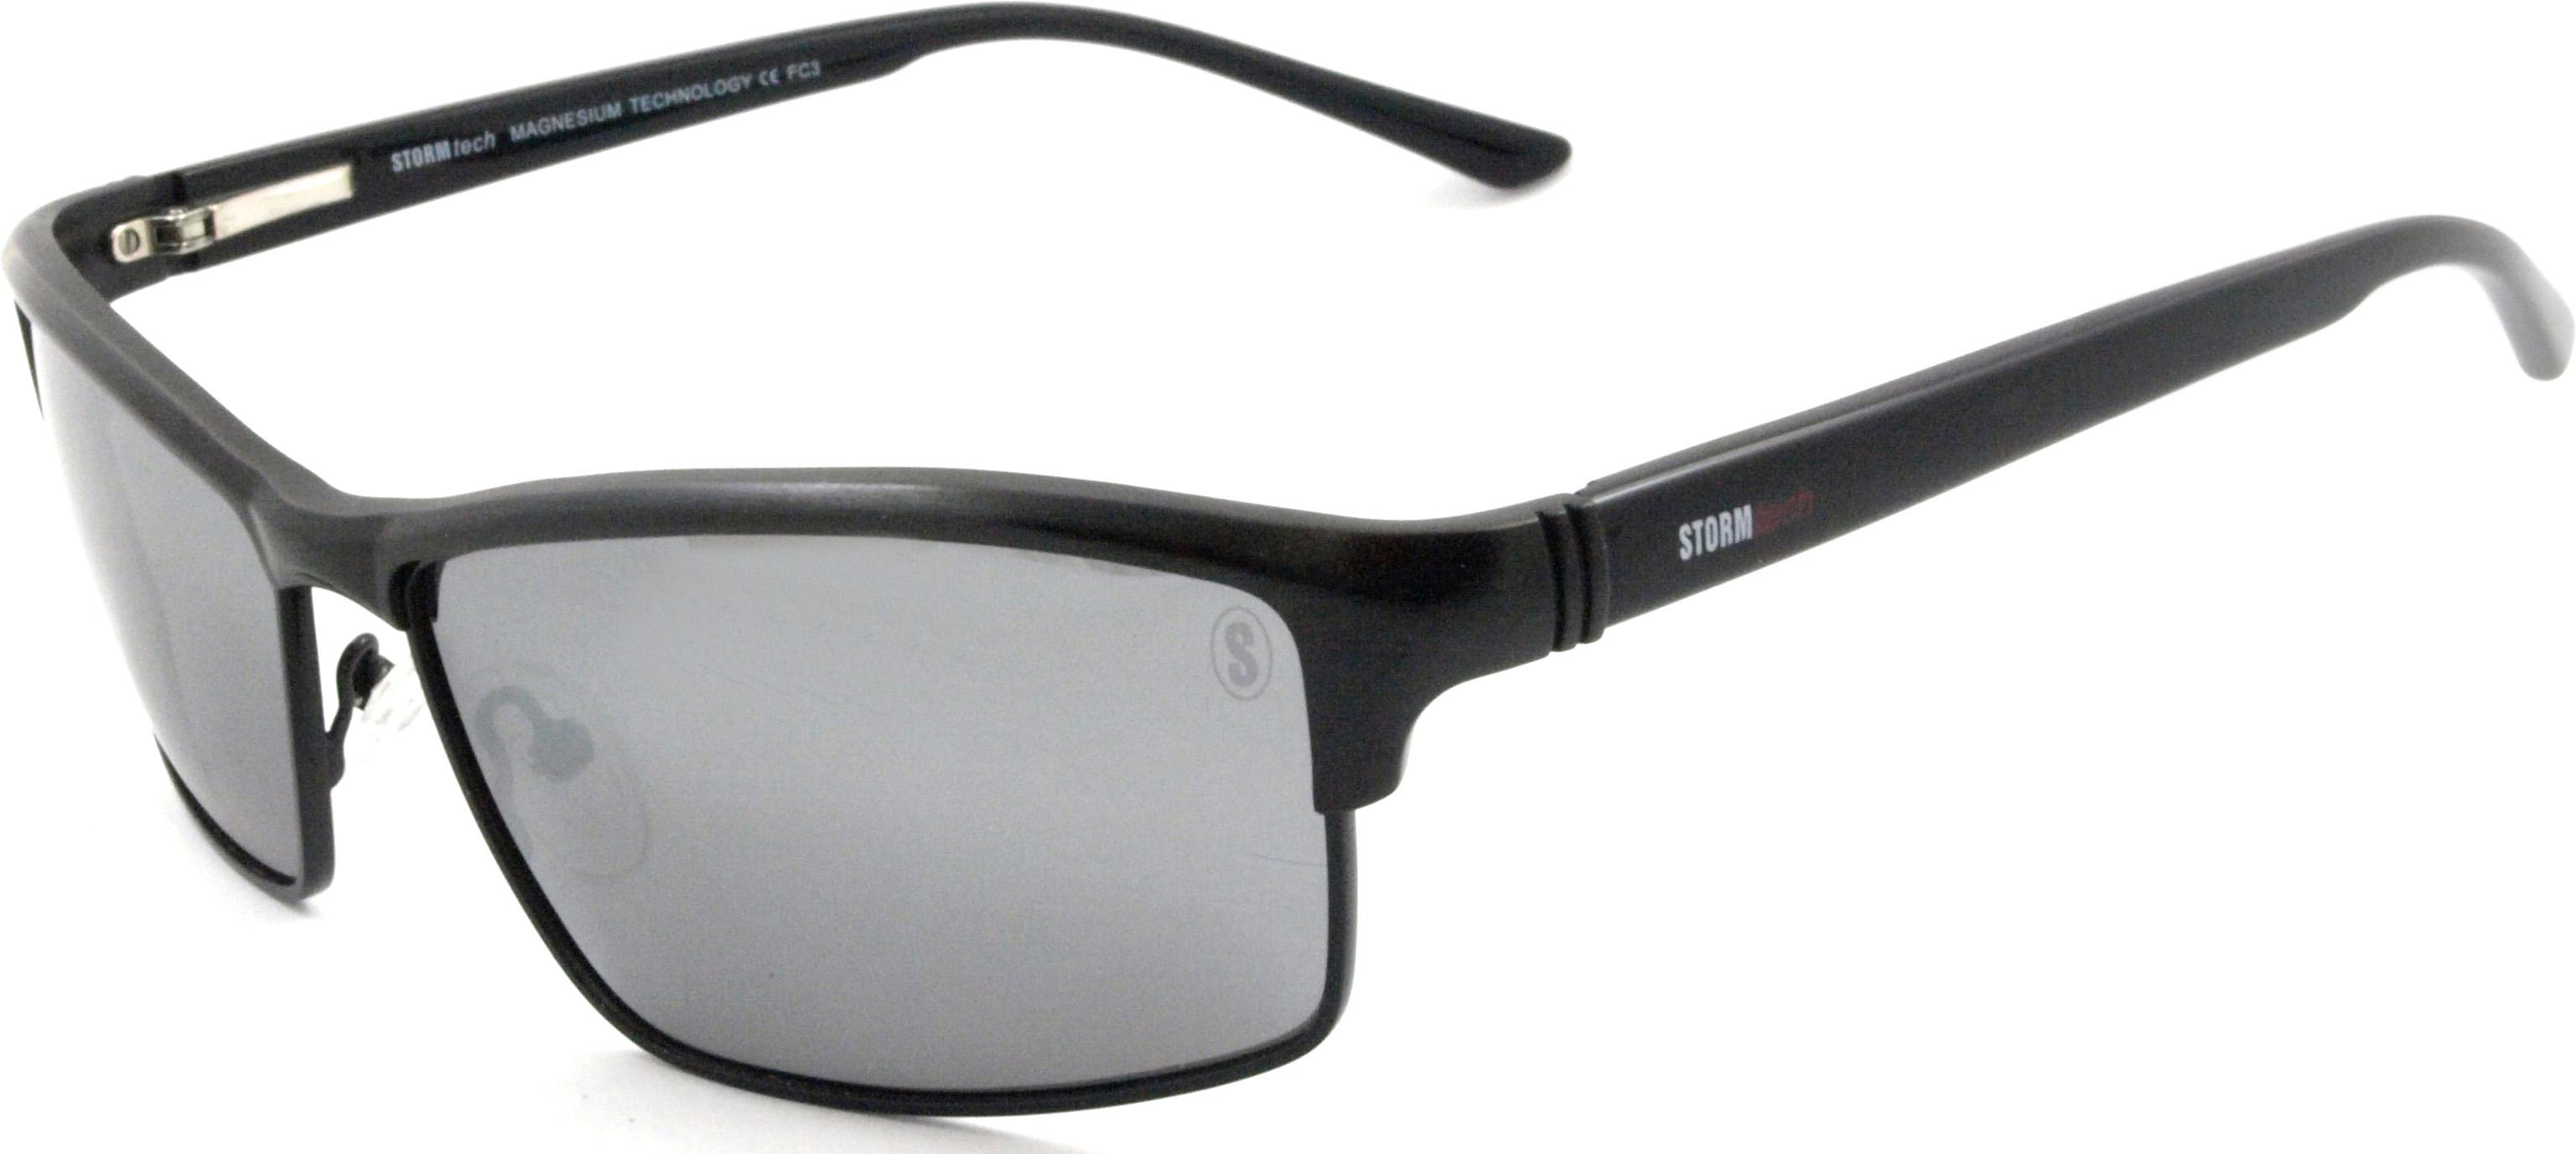 Stormtech Magnes Sunglasses - Black